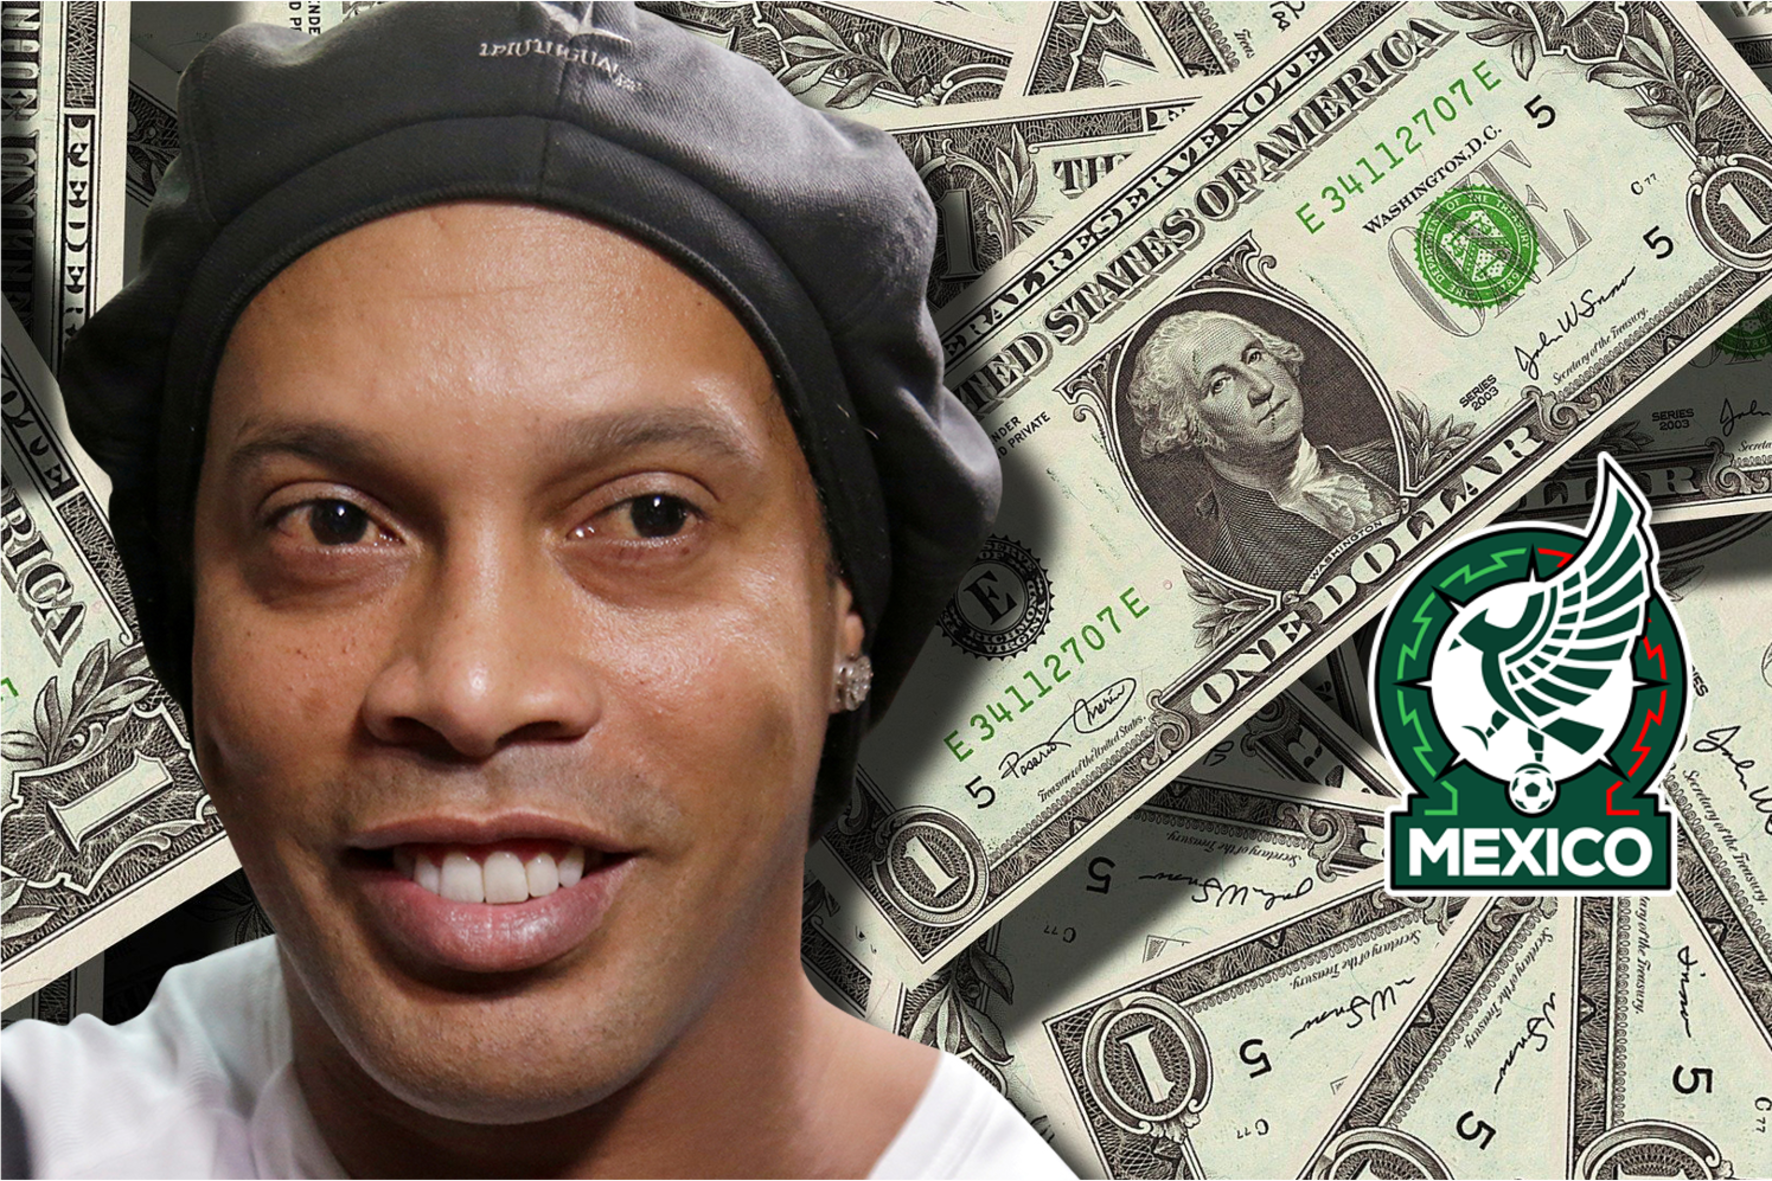 El jugador mexicano que tiene más fortuna que Ronaldinho, lo supera por 10 millones